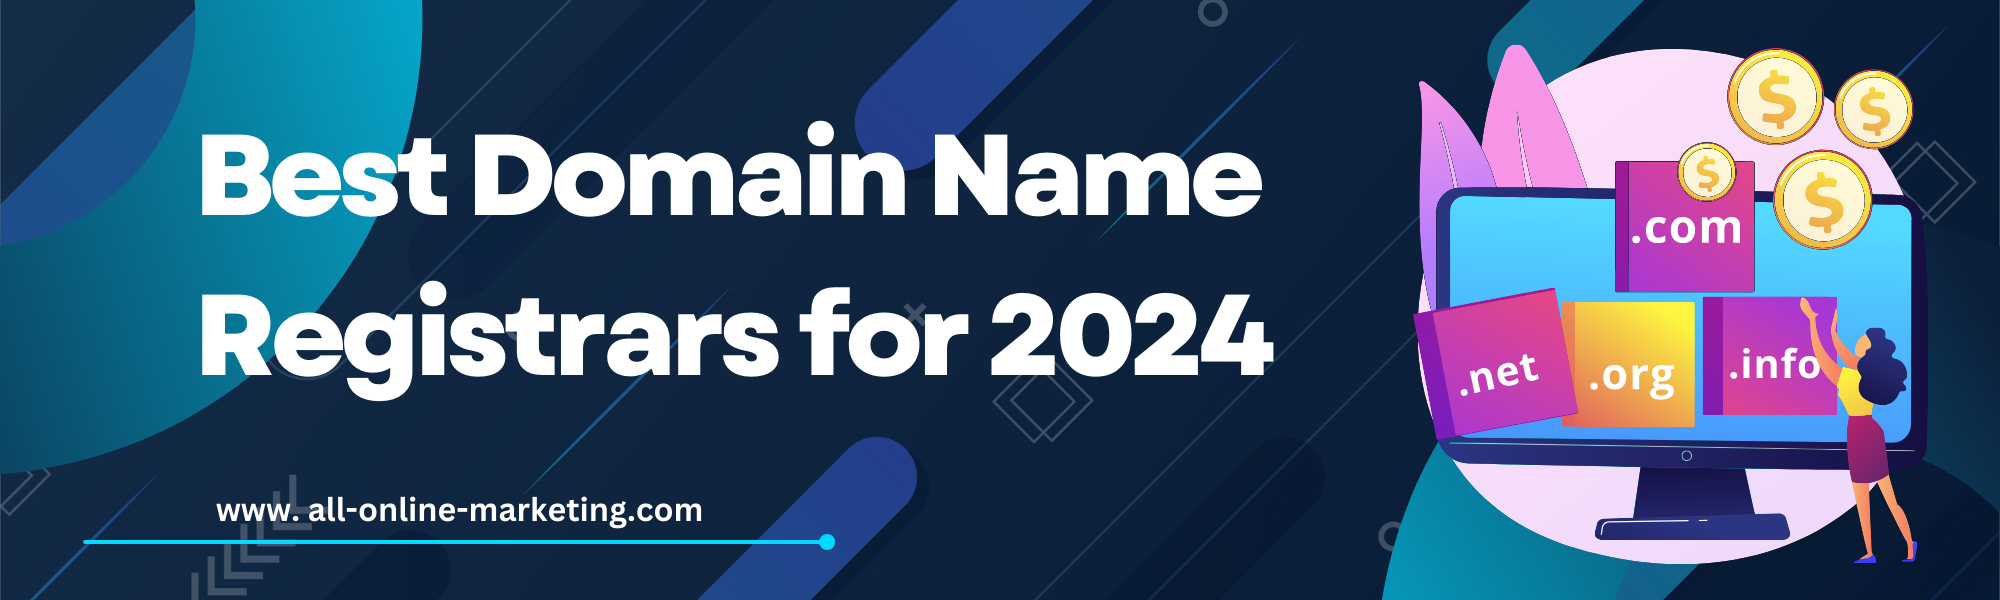 Best Domain Name Registrars for 2024 - Best Domain Registrars : How to Choose the Best Domain Registrar in 2024. Best Domain Registrars to Buy a Domain Name